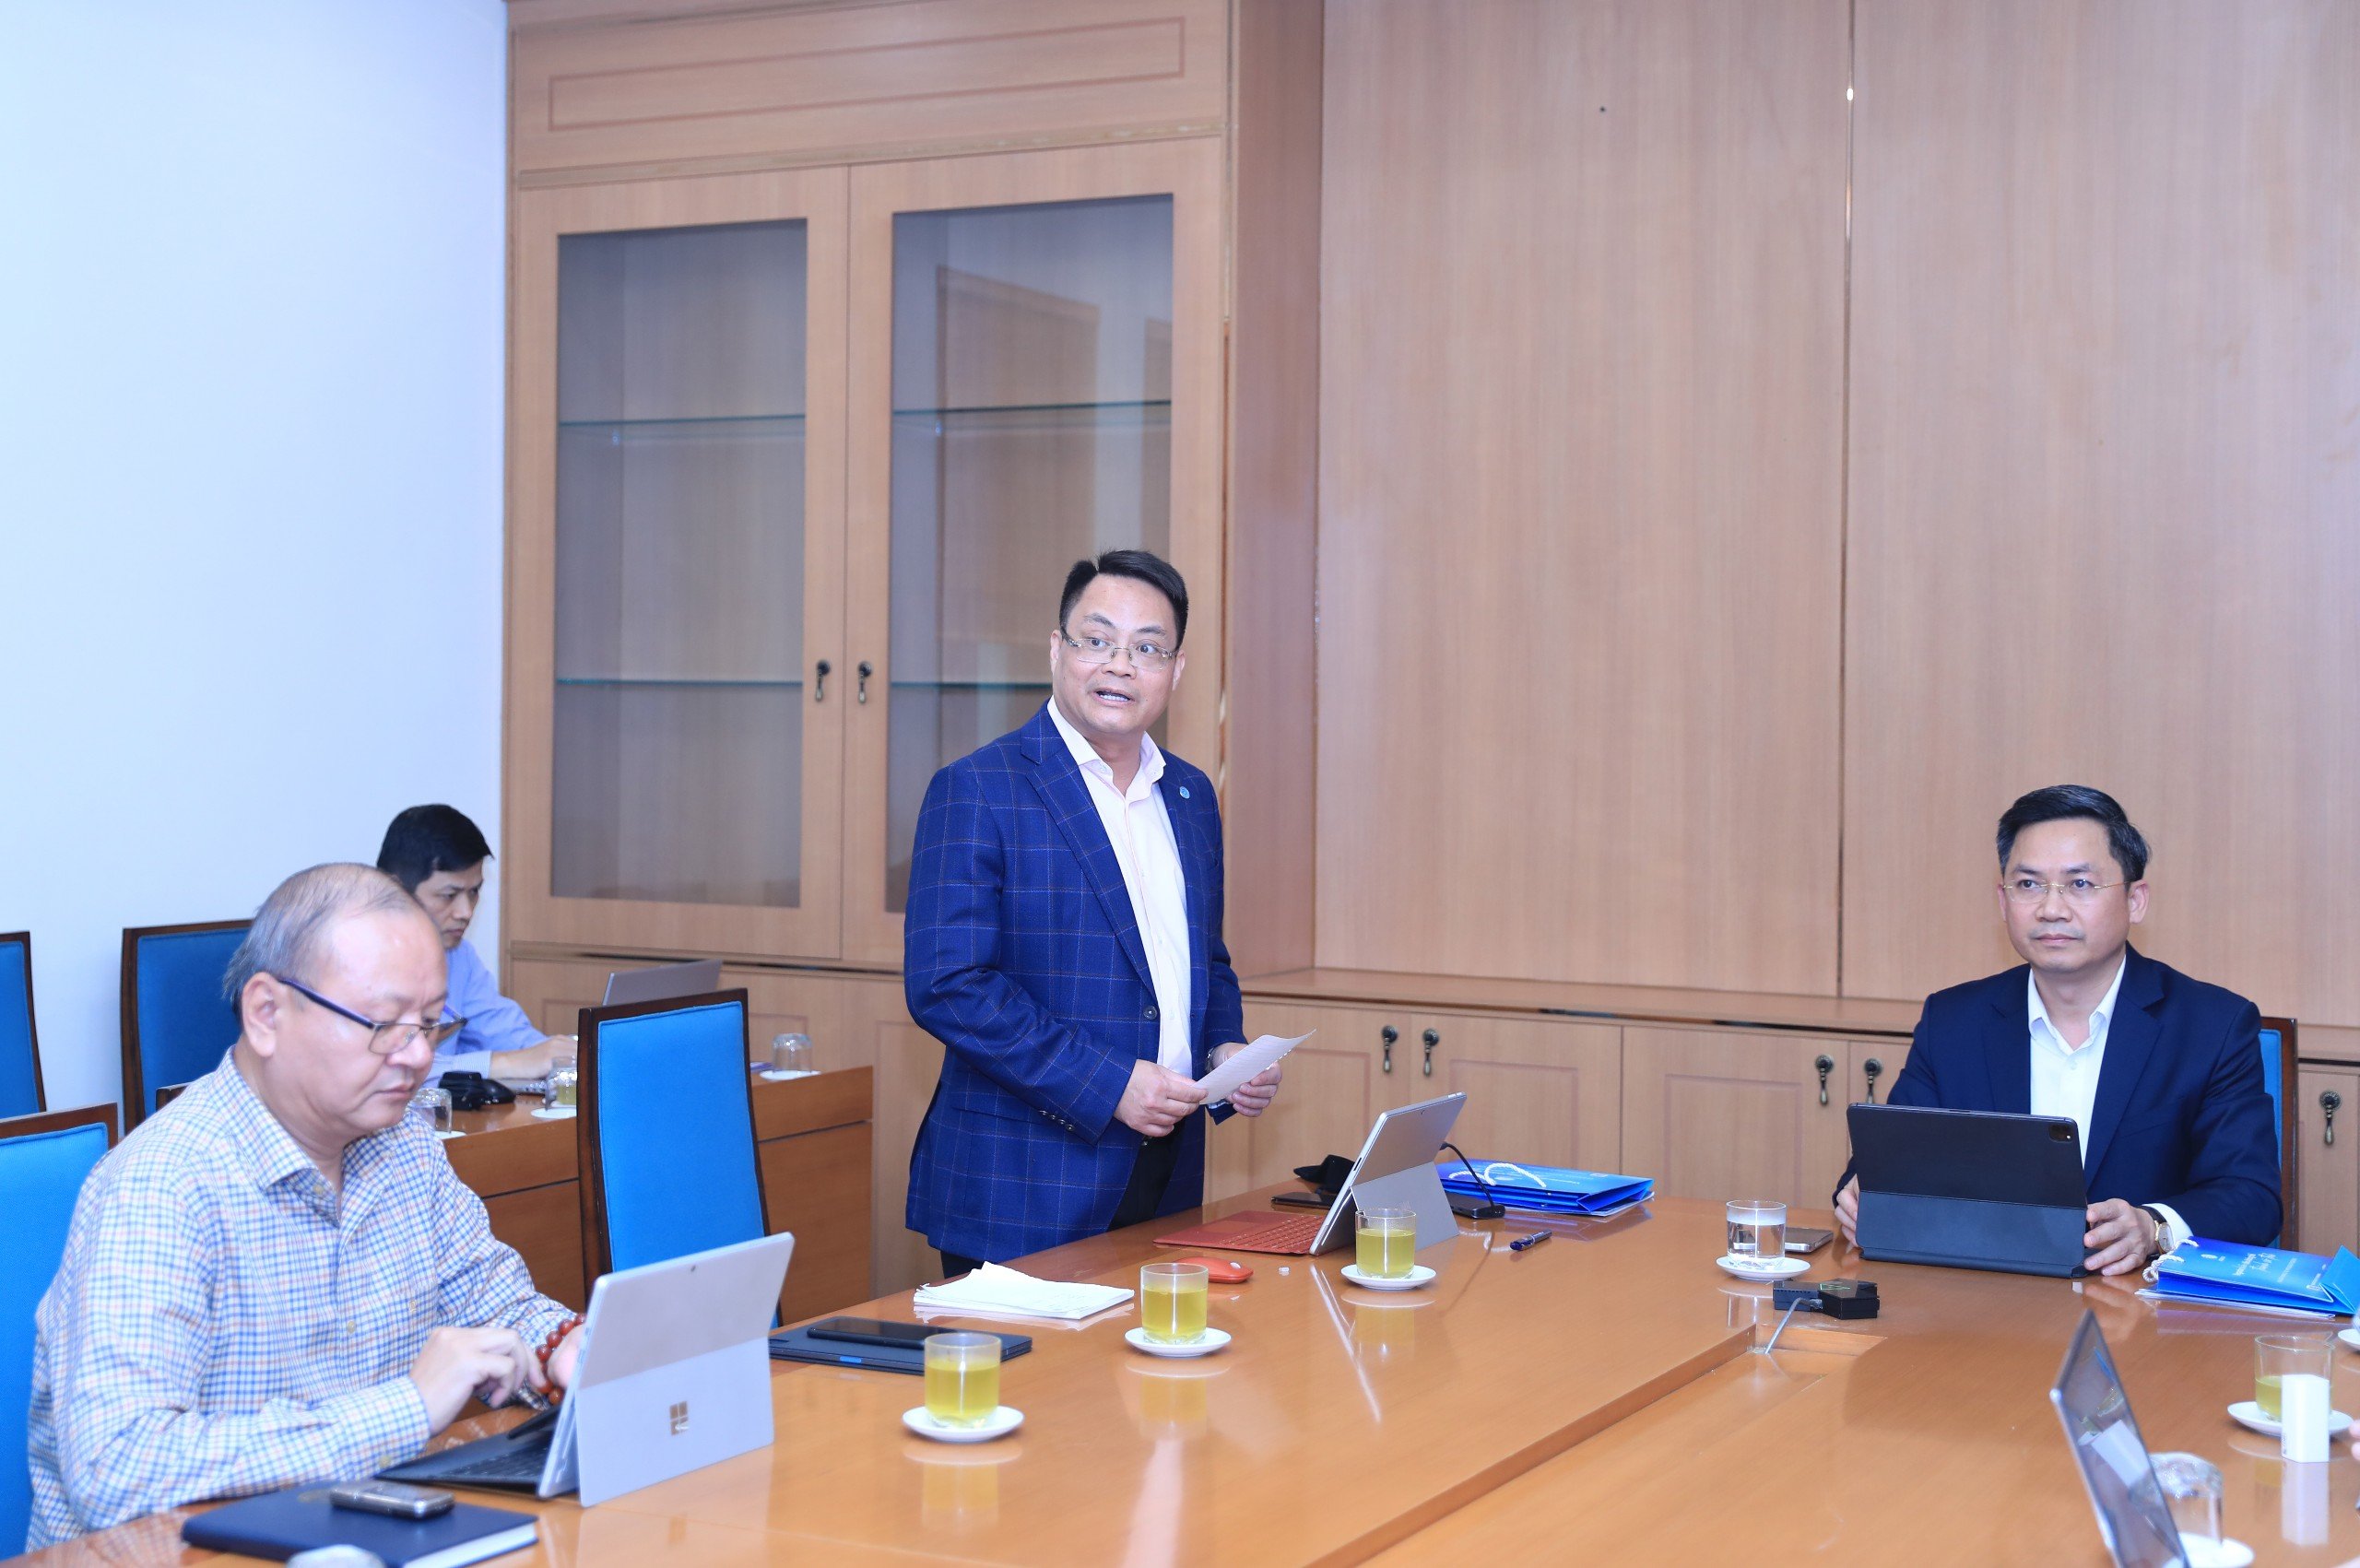 Giám đốc Sở TT&TT thành phố Hà Nội trao đổi cùng các đơn vị trong buổi họp